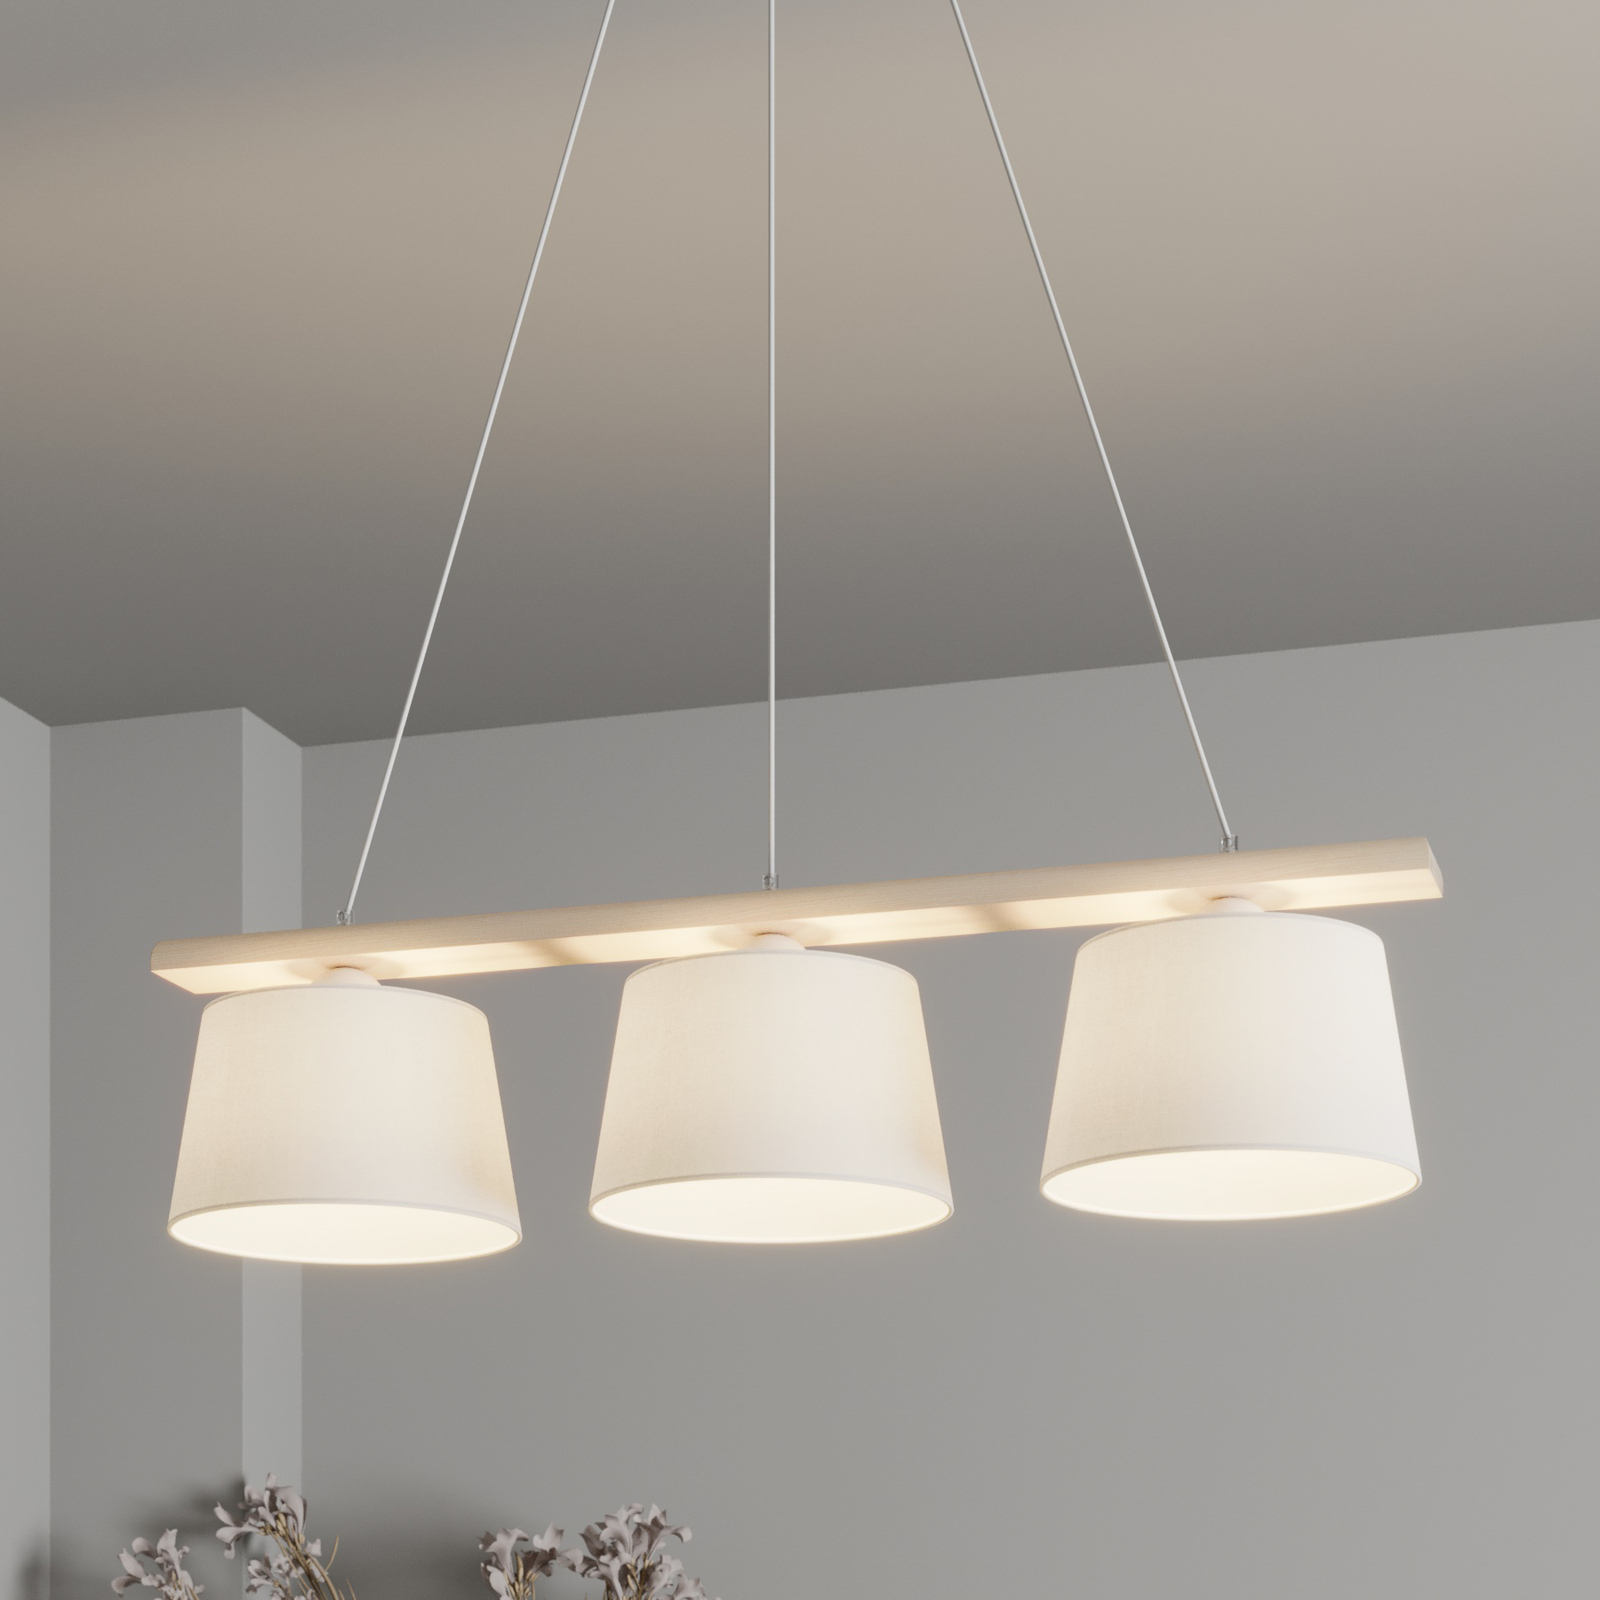 Sweden hængelampe, 3 lyskilder, antik hvid